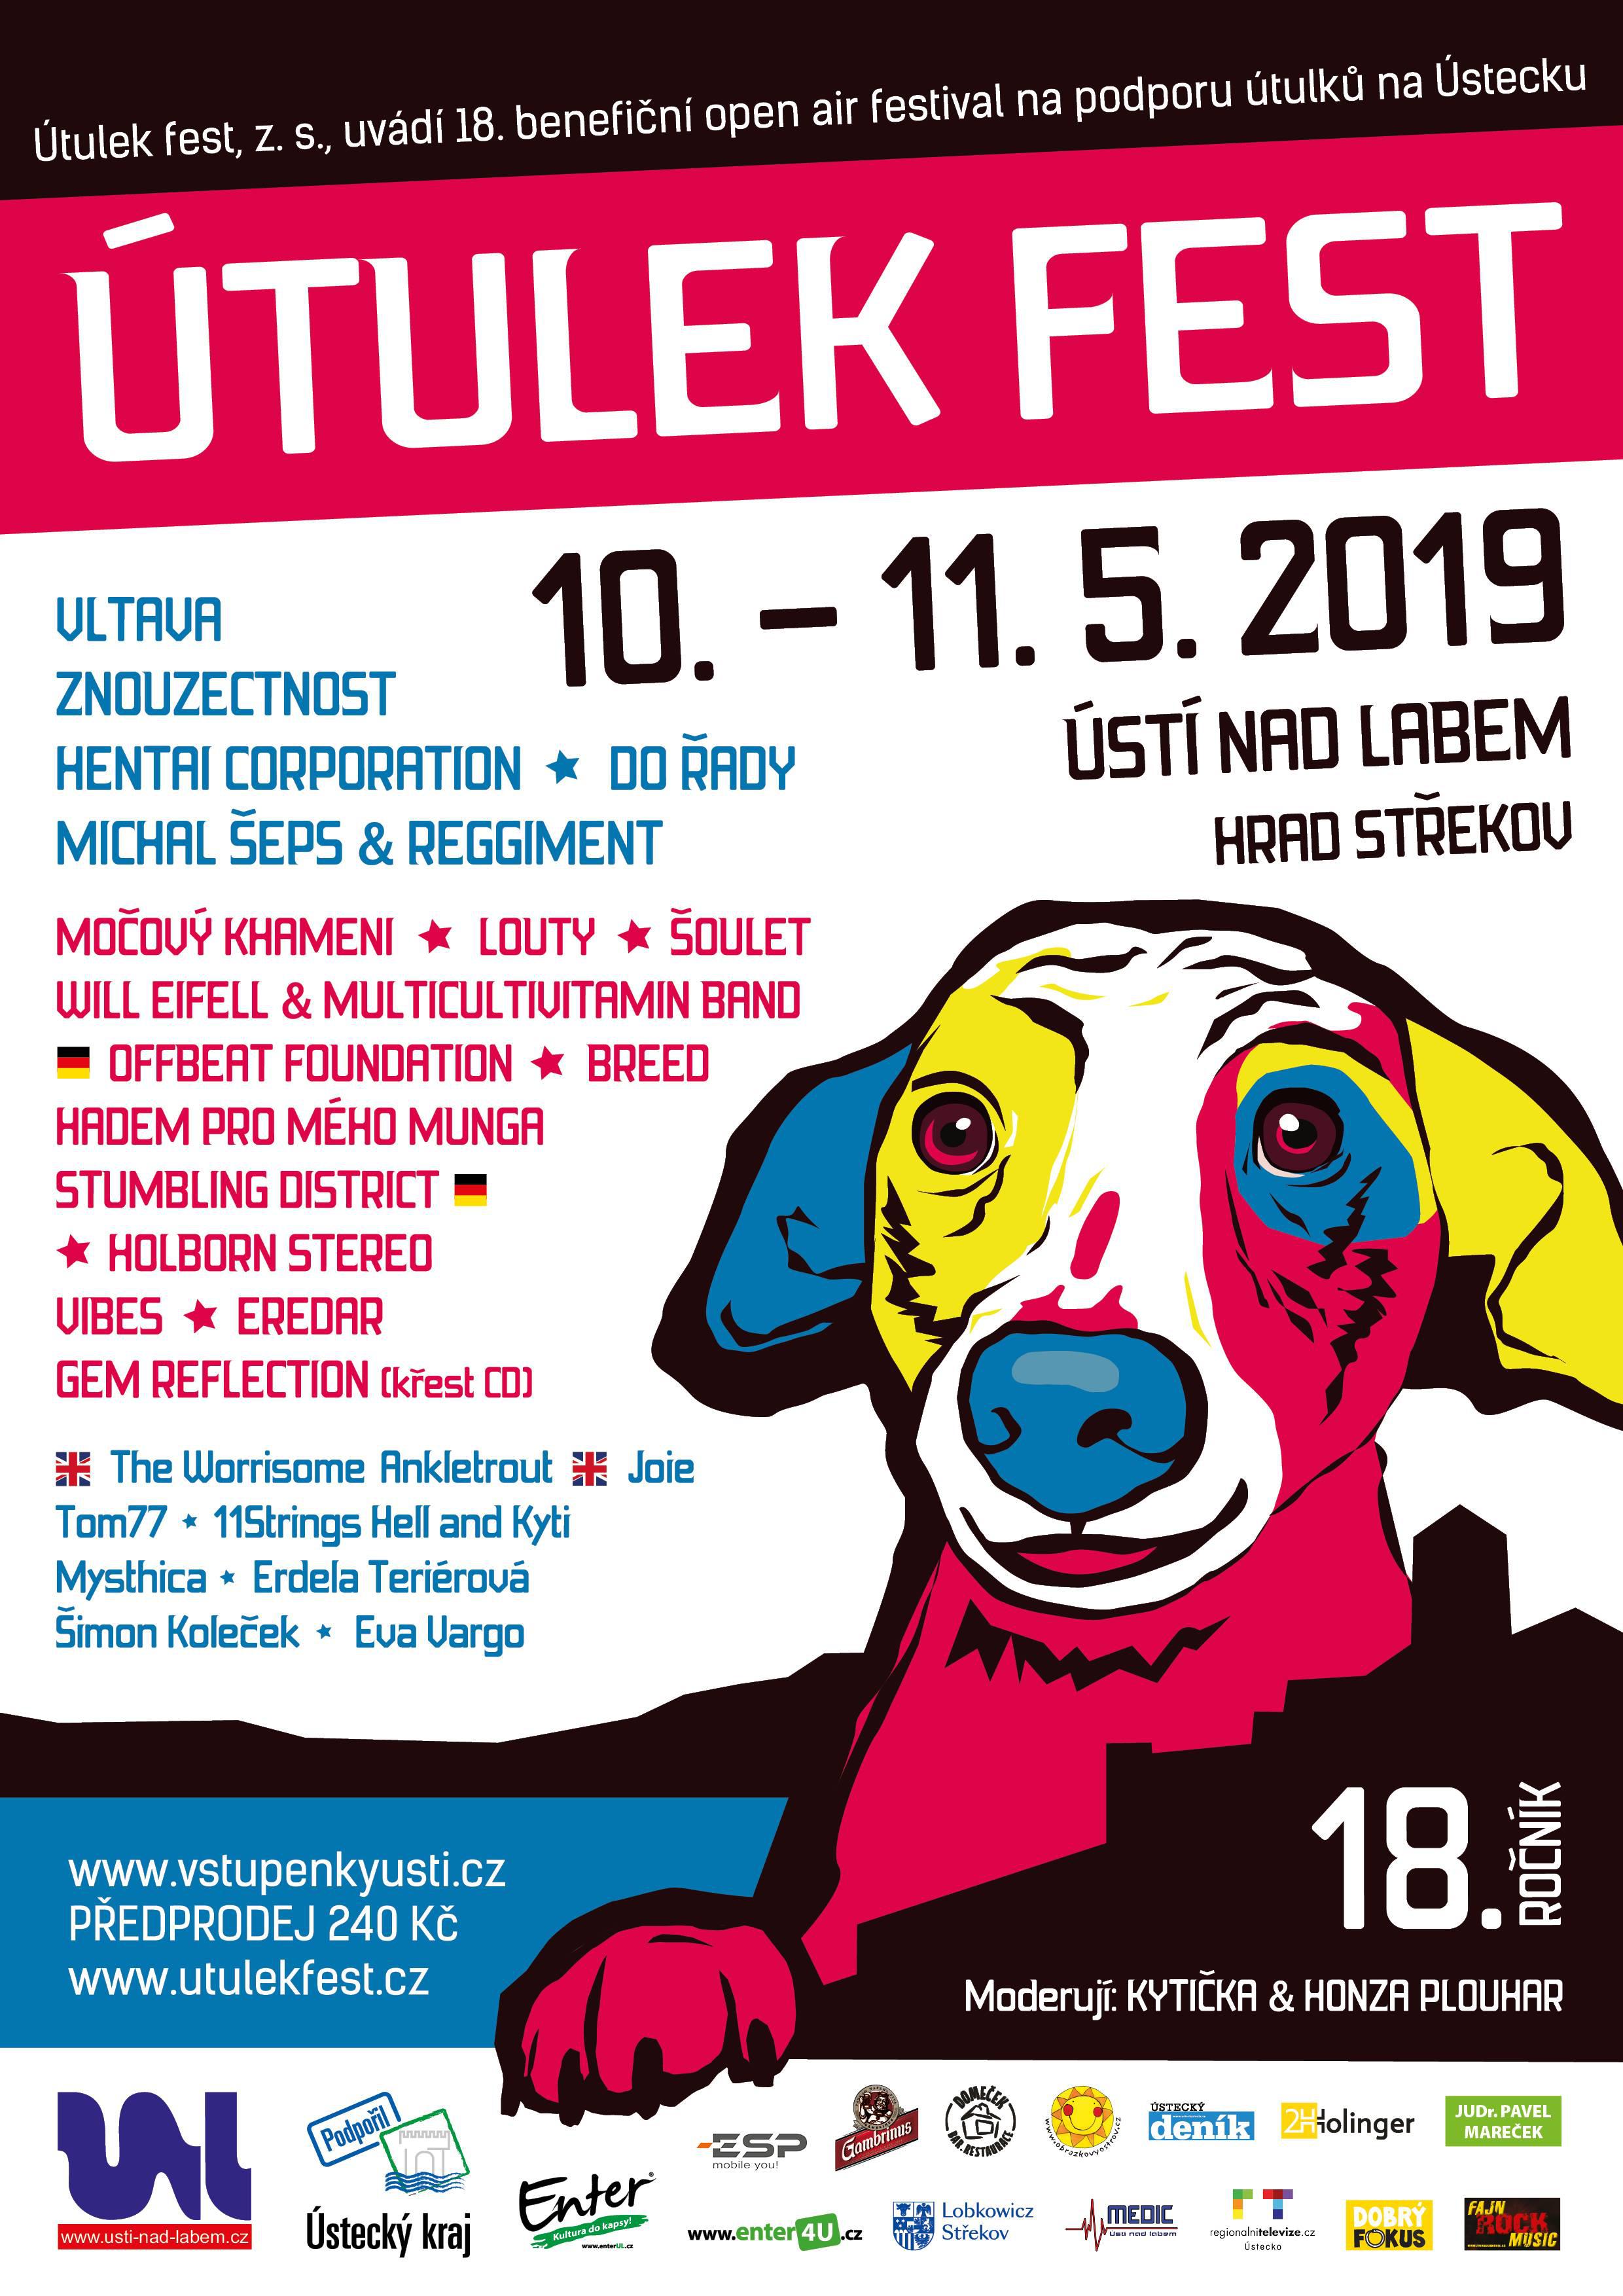 TULEK FEST 2019 - 10. - 11. kvtna 2019